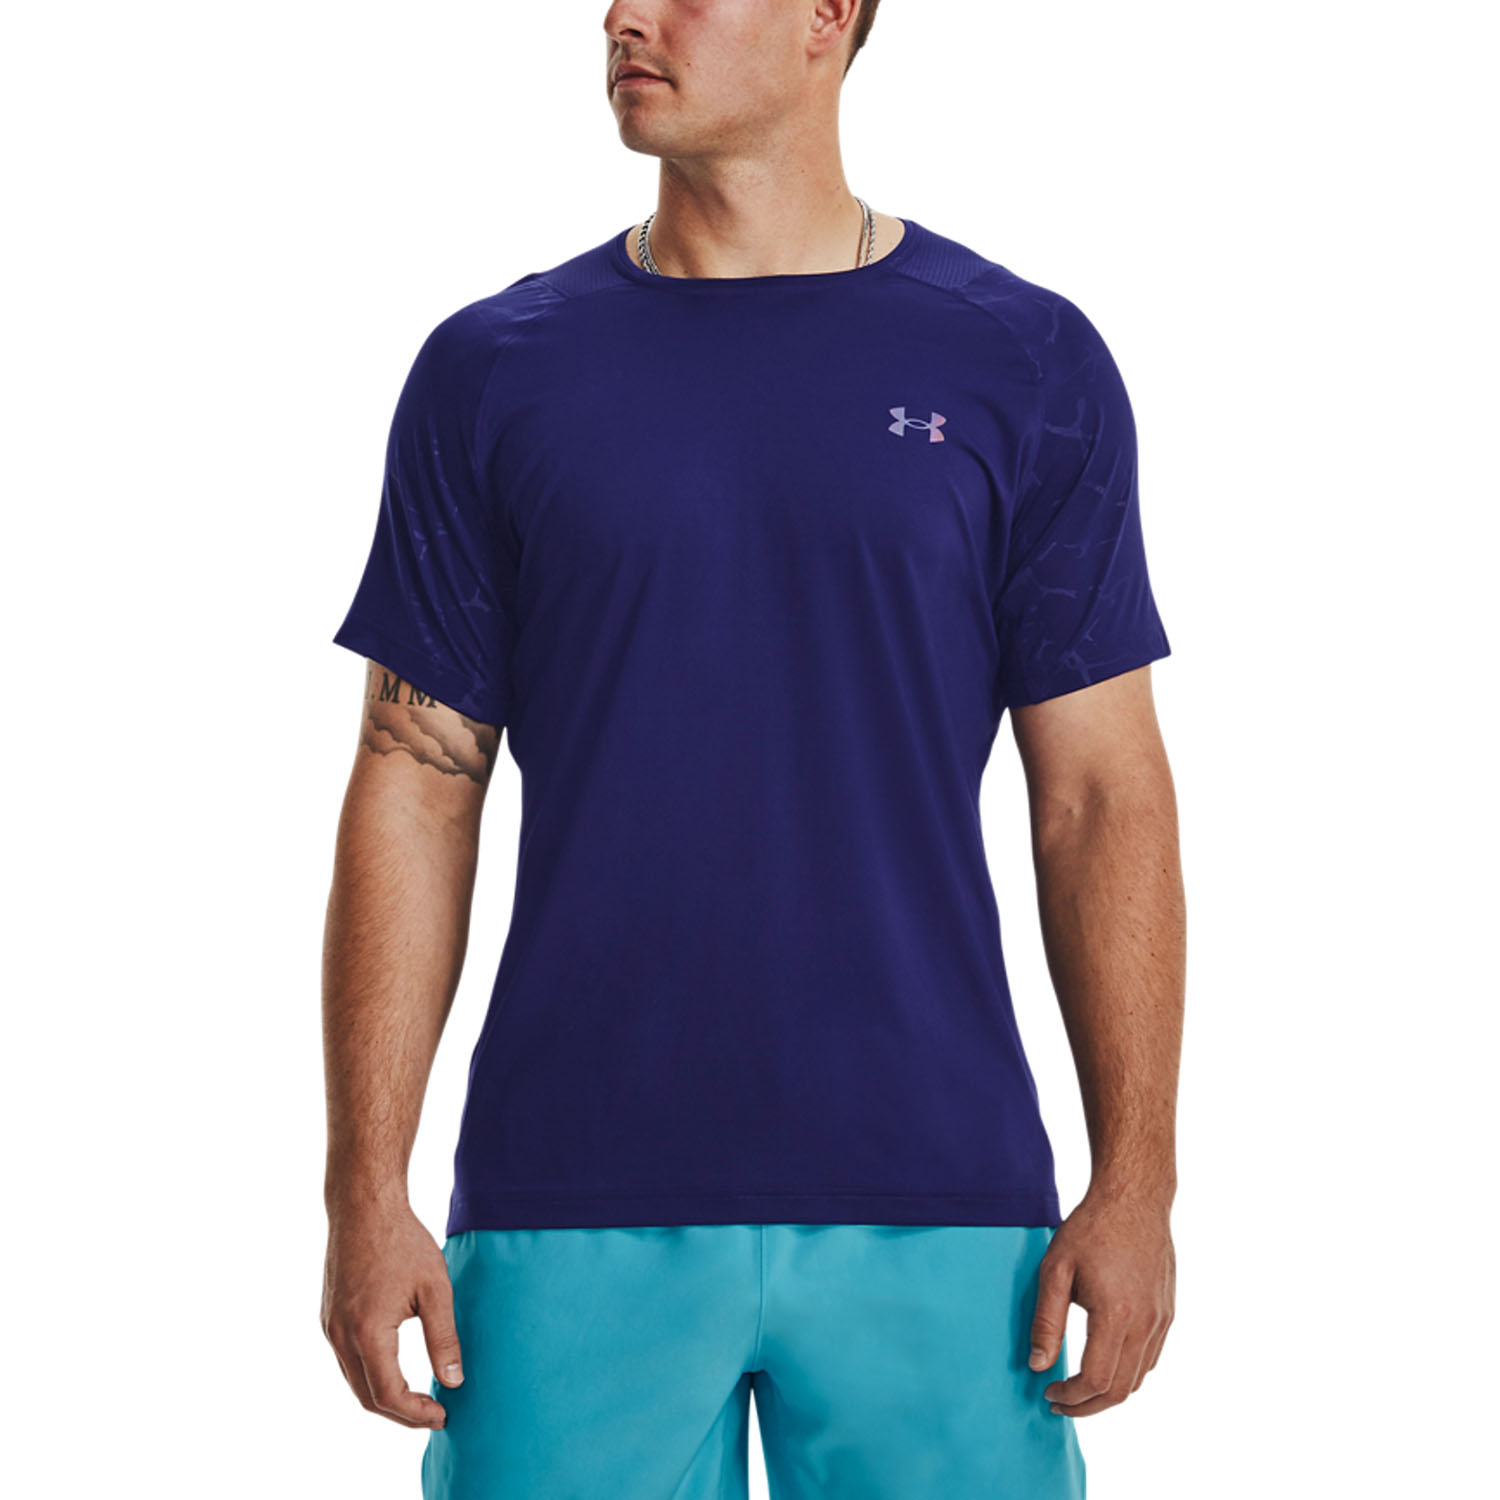 Under Armour Rush Emboss Men's Tennis T-Shirt - Sonar Blue